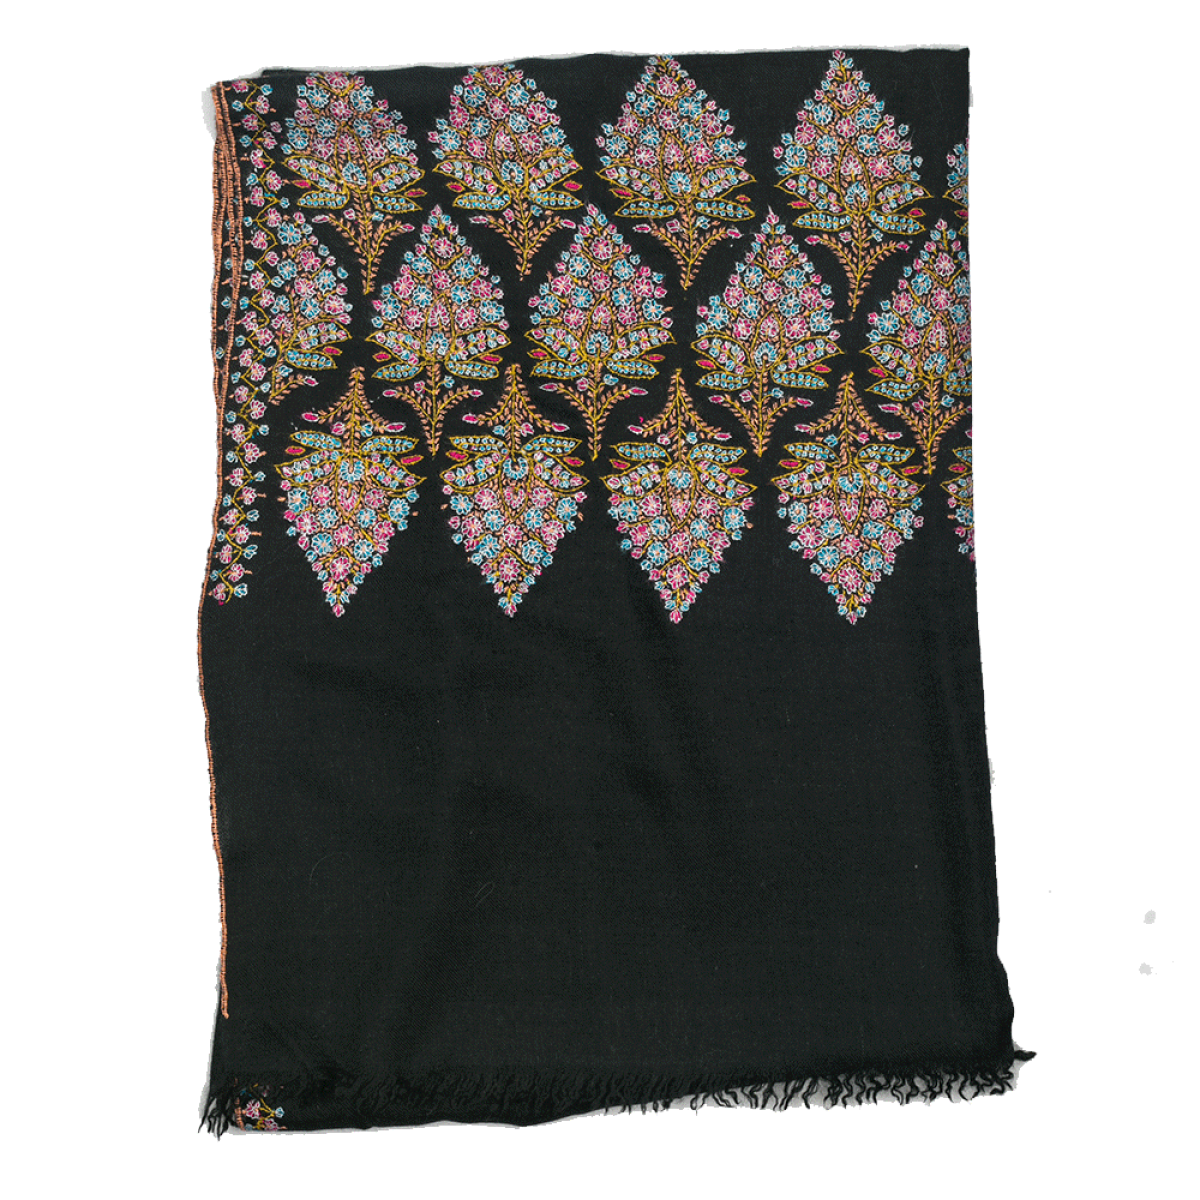 Embroidered Pashmina Shawl - Black / Pink & Blue Motif